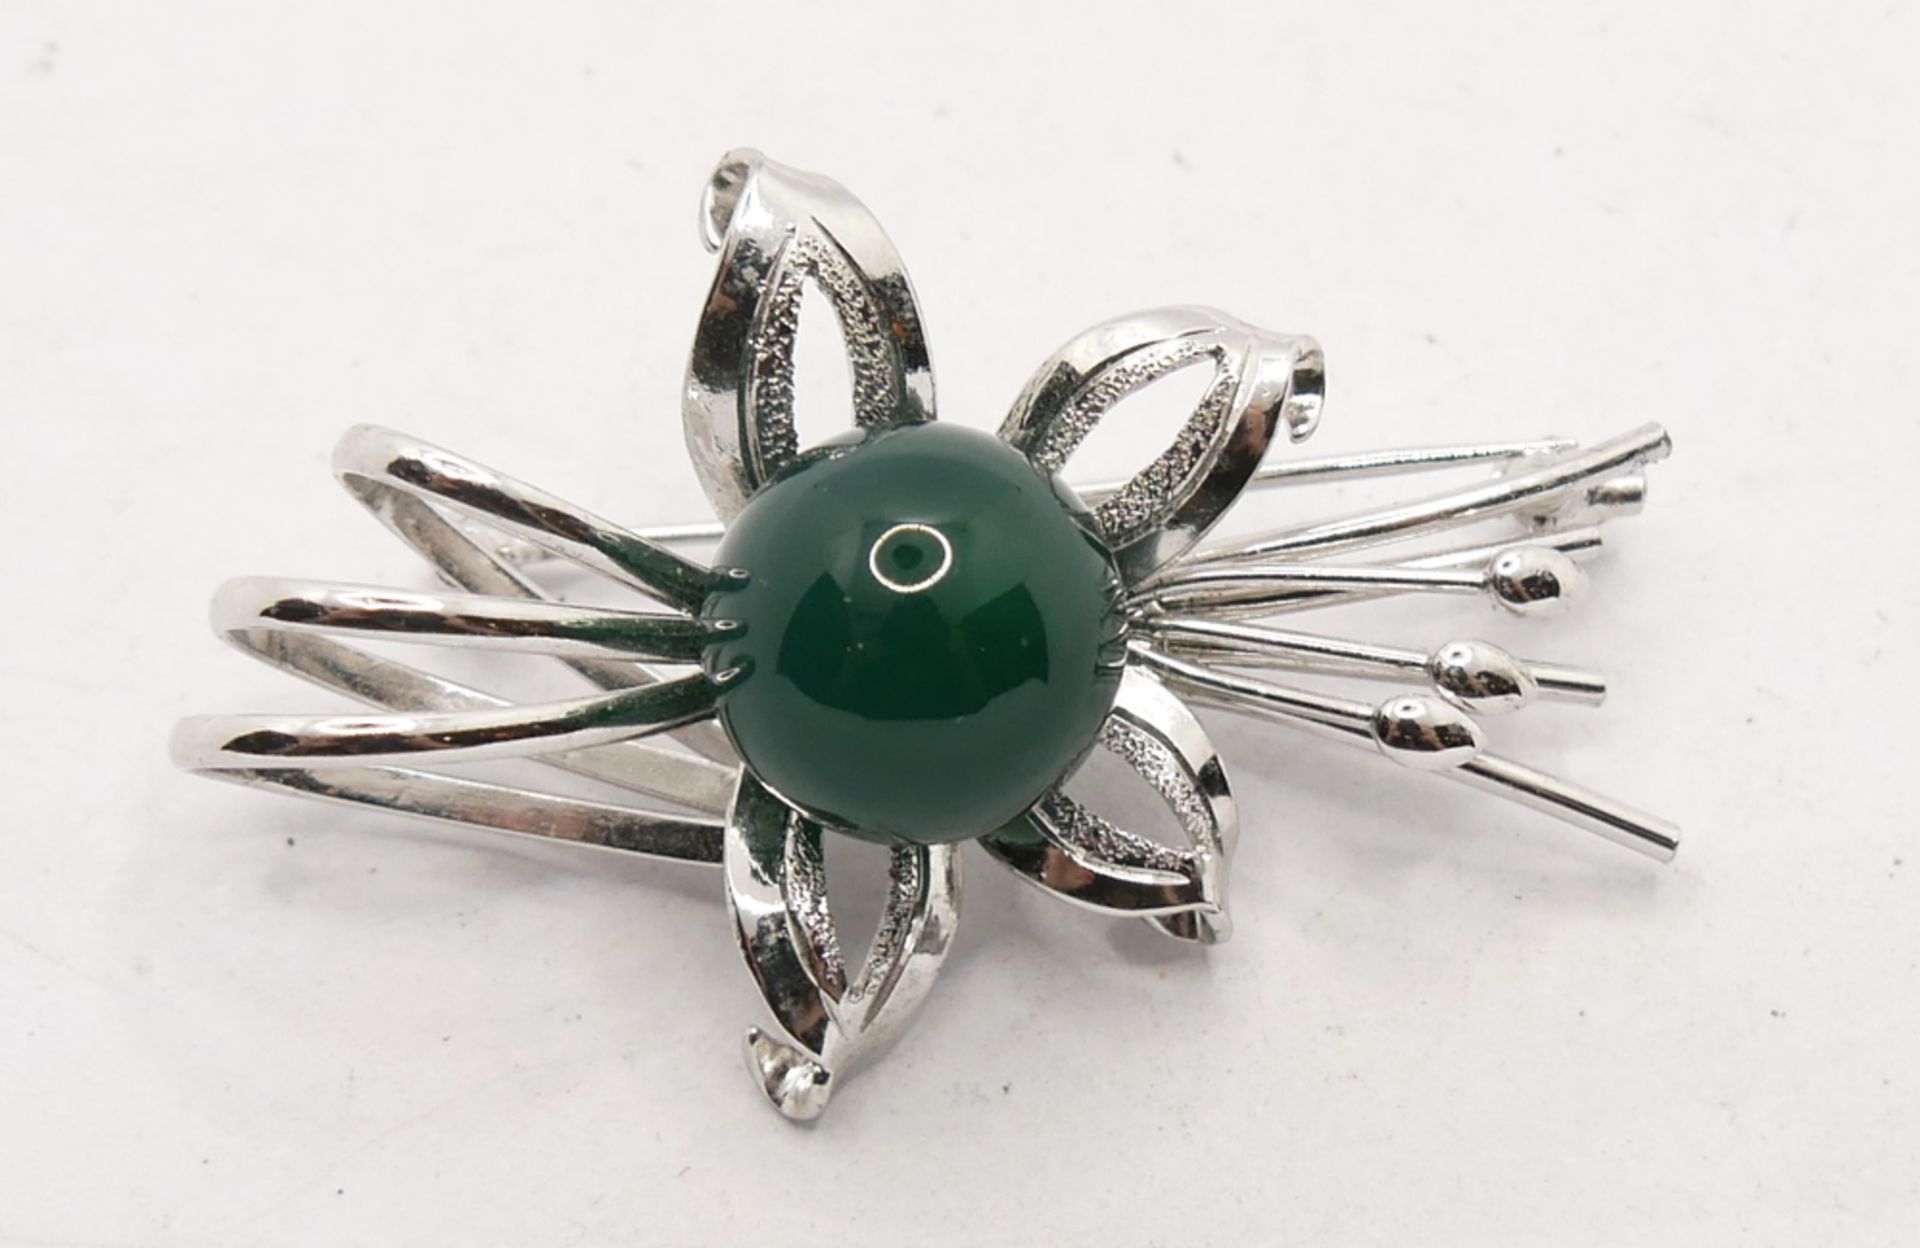 Silber Brosche "Blume" mit grüner Perle. Länge ca. 4 cm